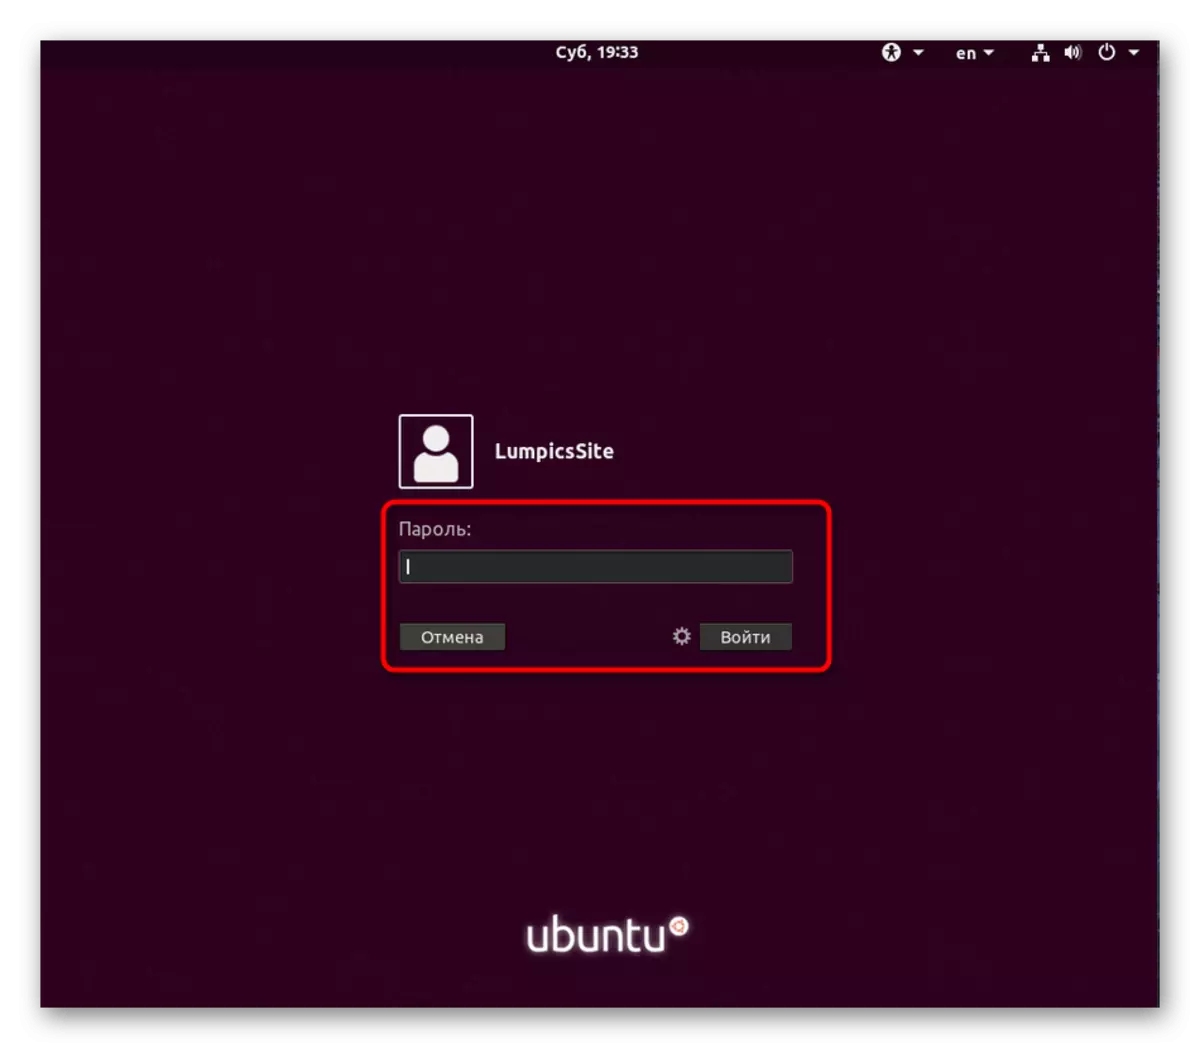 Daħħal il-password biex tawtorizza lill-utent f'Ubuntu